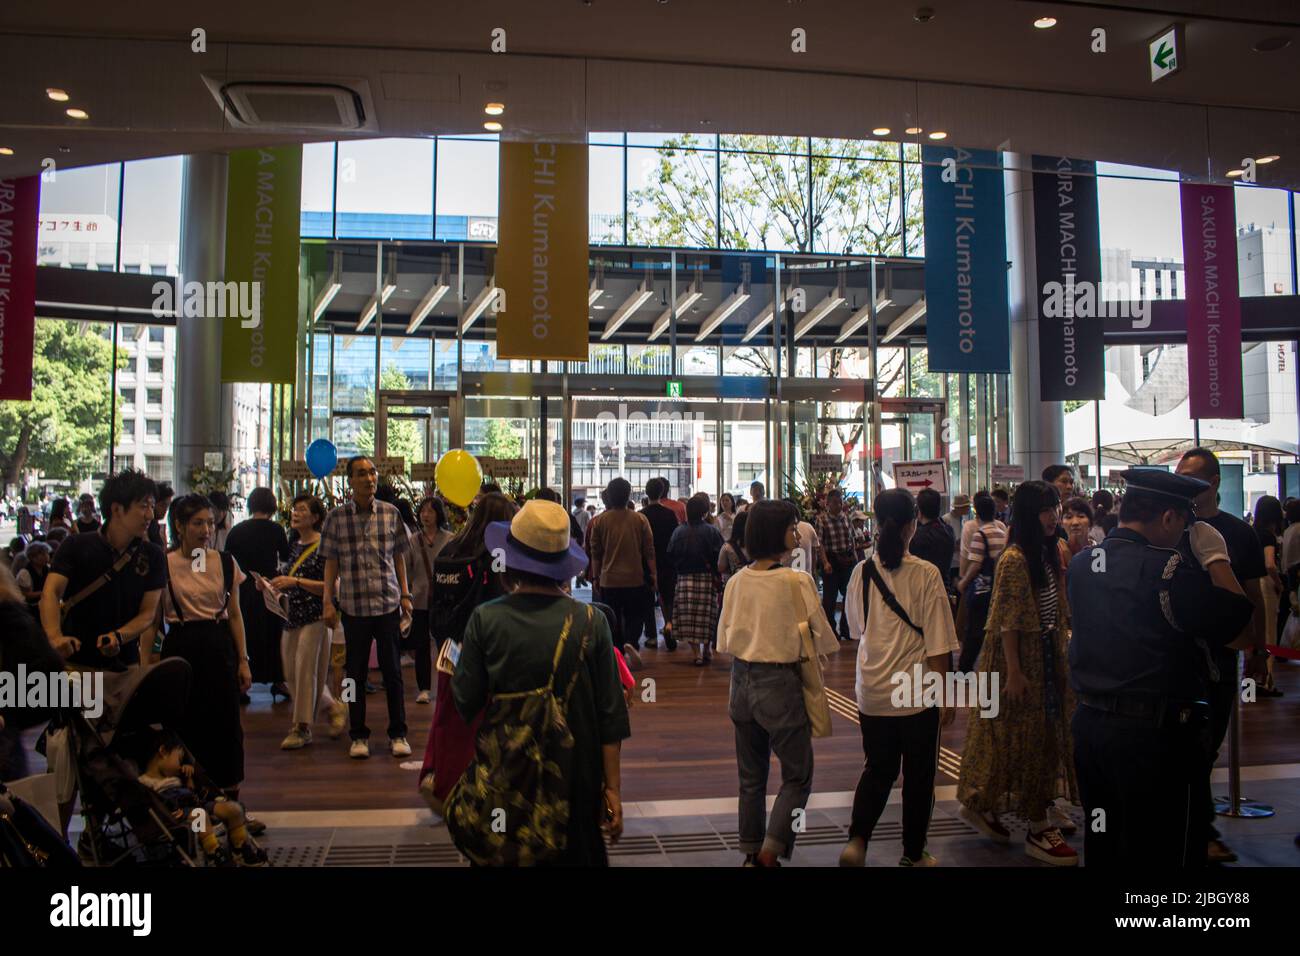 Kumamoto, Japan - 14. Sep. 2019 : Kumamoto Sakuramachi Busbahnhof am Eröffnungstermin. Die Einheimischen und Touristen stürmten in dieses neue Gebäude. Stockfoto